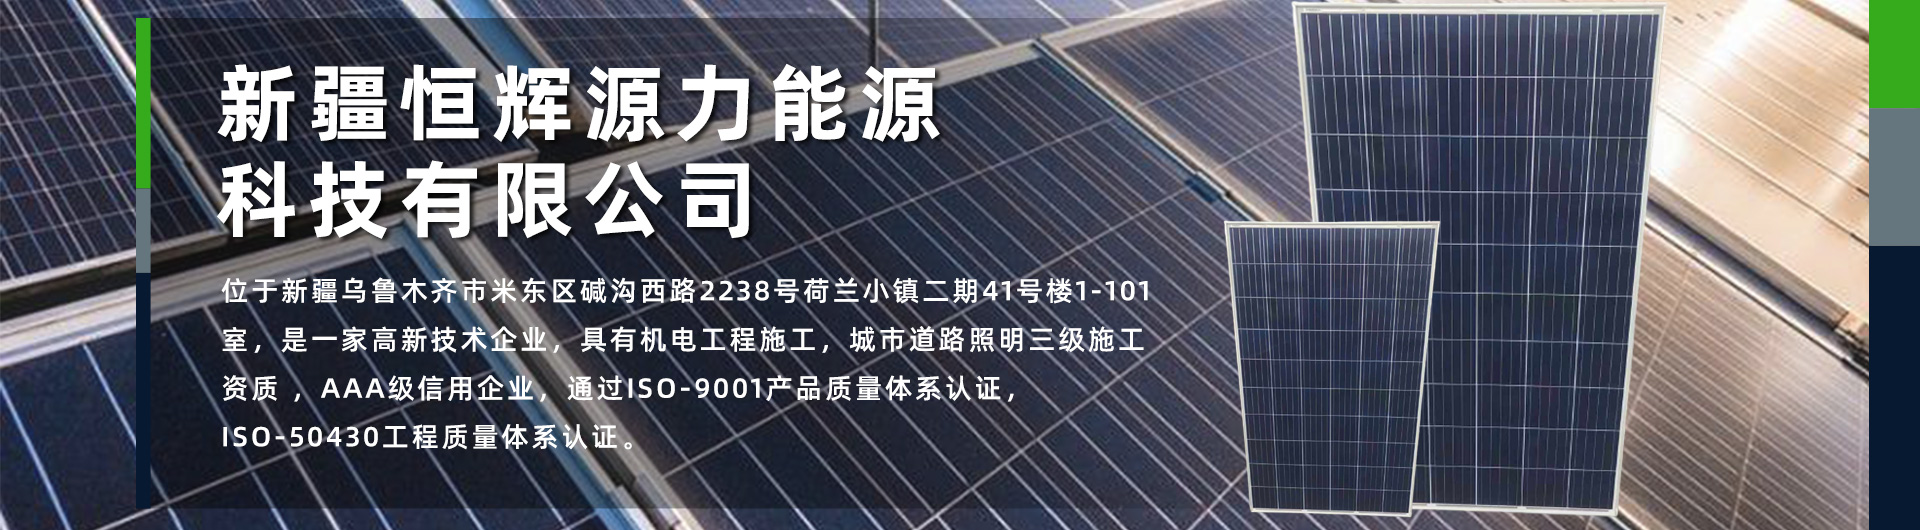 新疆太阳能发电,新疆太阳能路灯,新疆太阳能电池板